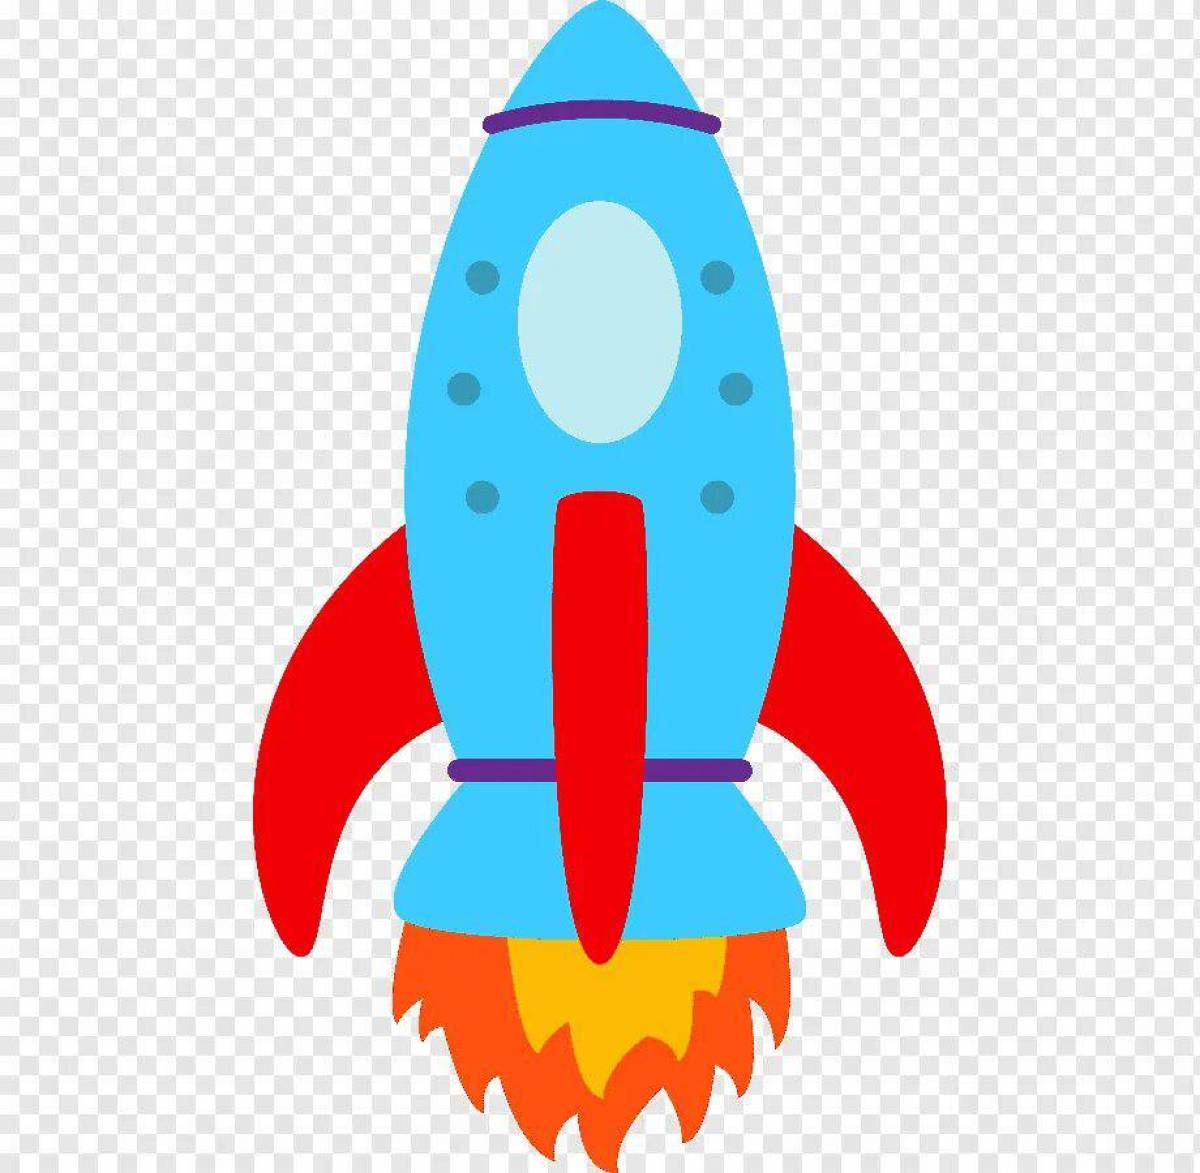 Картинки ракеты для детей дошкольного возраста. Ракета для детей. Изображение ракеты для детей. Цветная ракета для детей. Космическая ракета для детей.